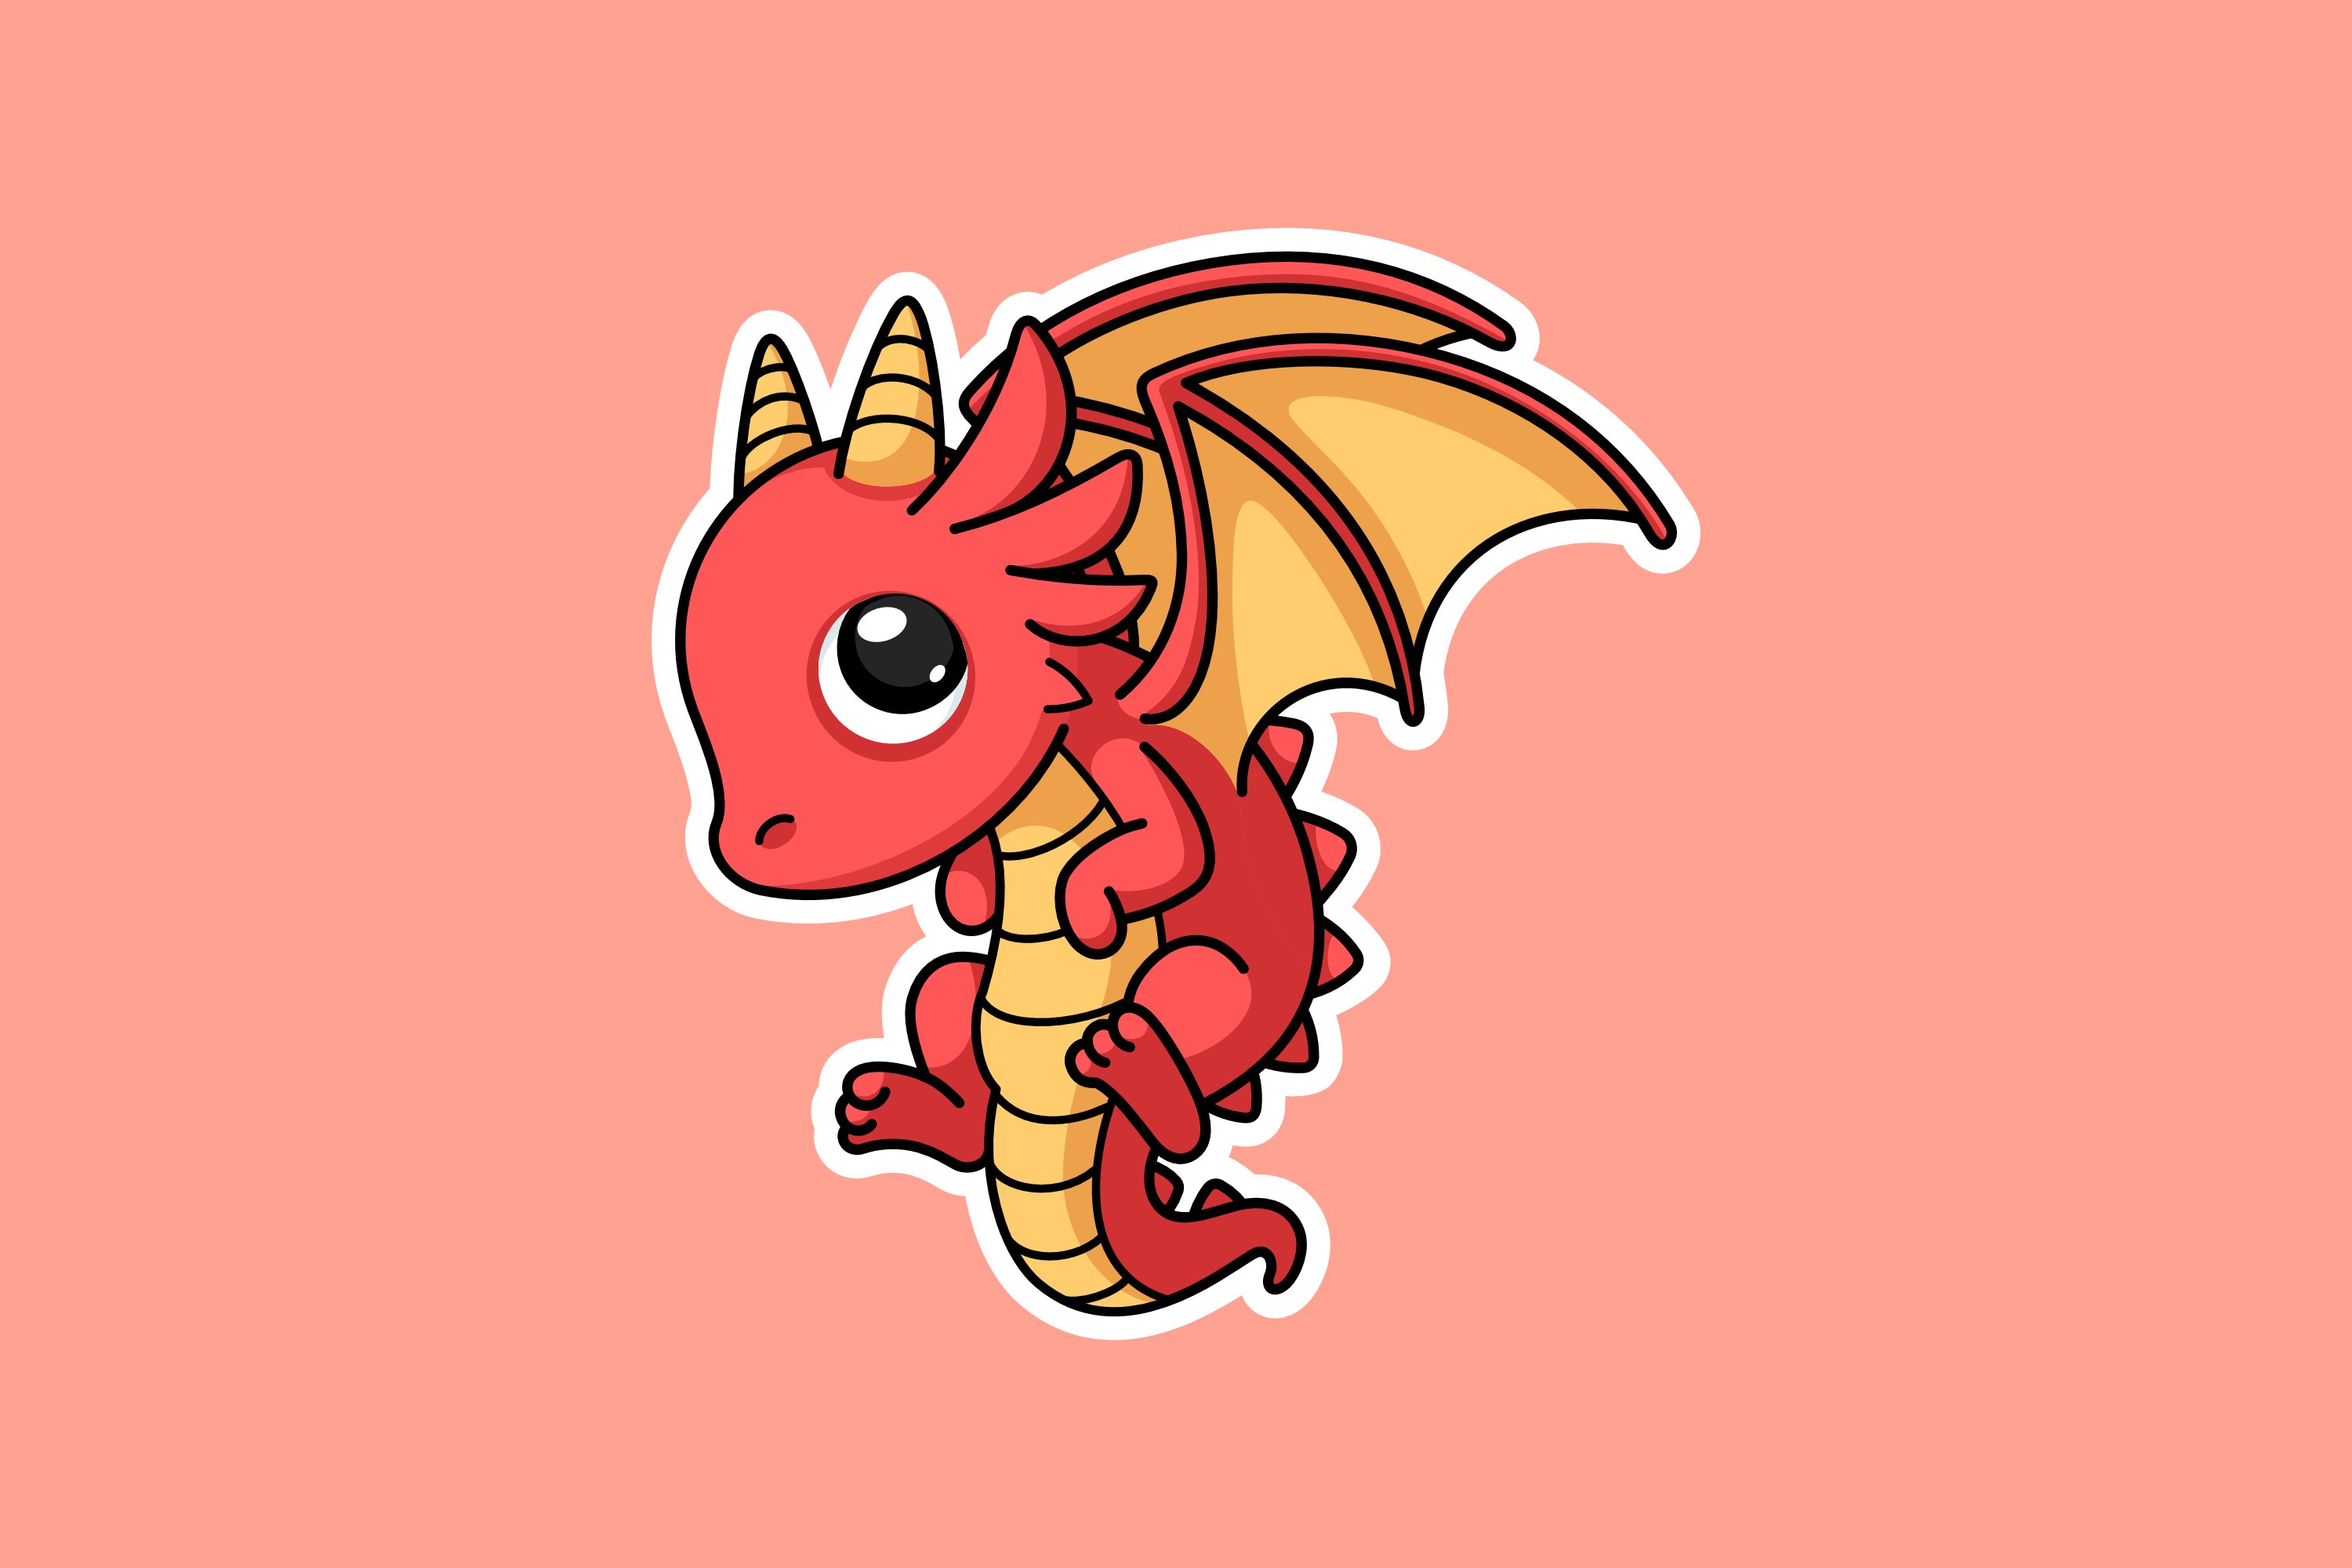 Cute Little Dragon Sticker cover image.